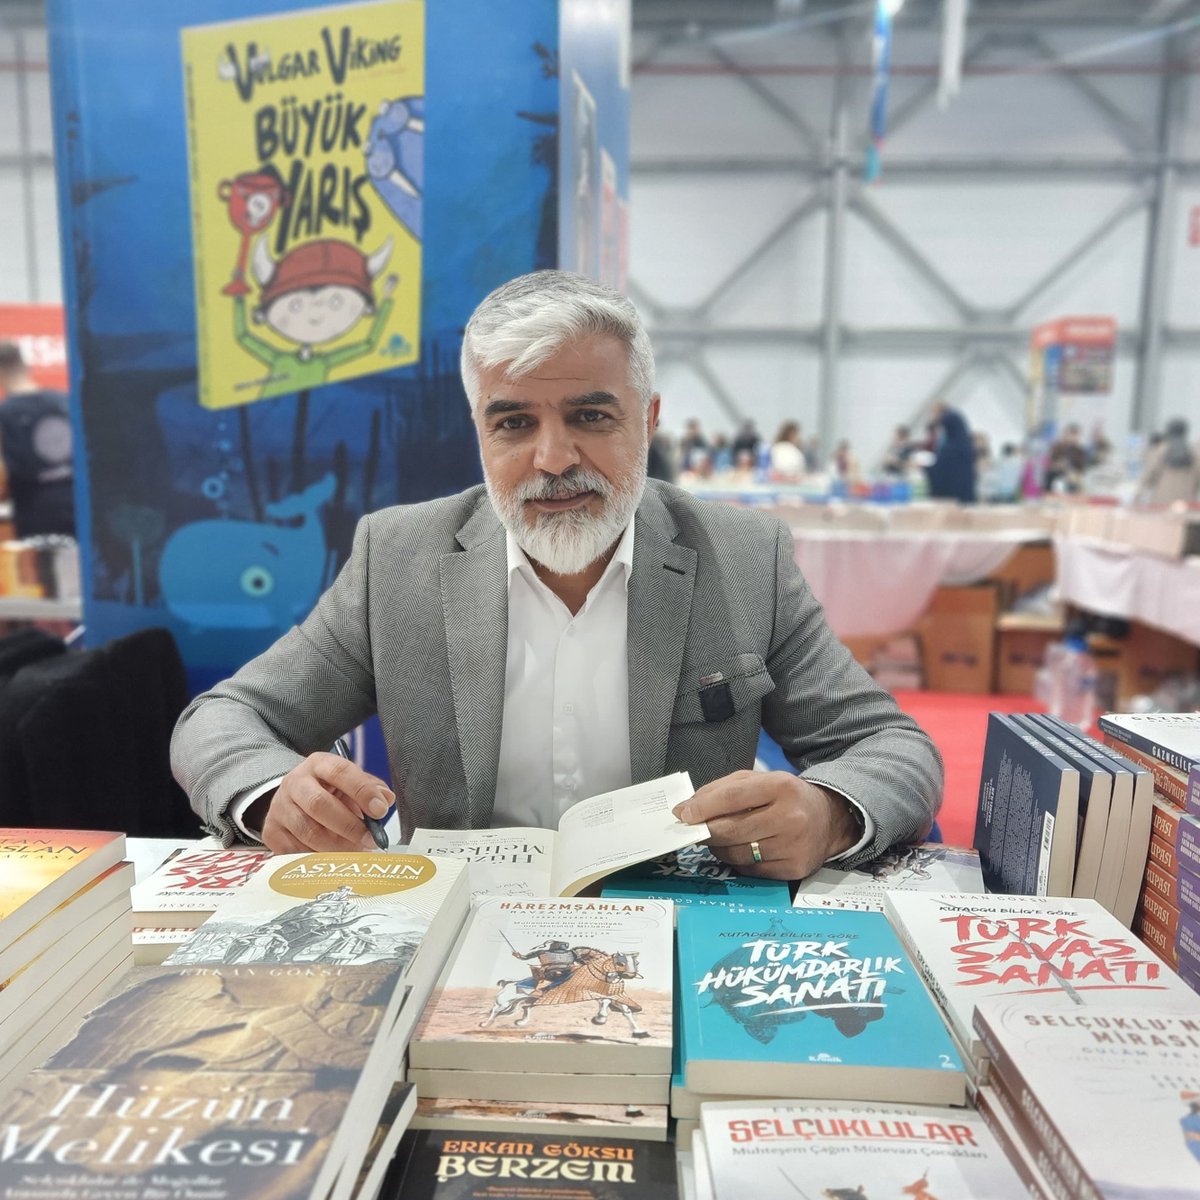 ETKİNLİK | Yazarlarımız Erkan Göksu @erkangoksu1 Erzurum Kitap Fuarı’nda okurlarıyla buluştu ve kitaplarını imzaladı. kronikkitap.com/yazarlar/erkan…